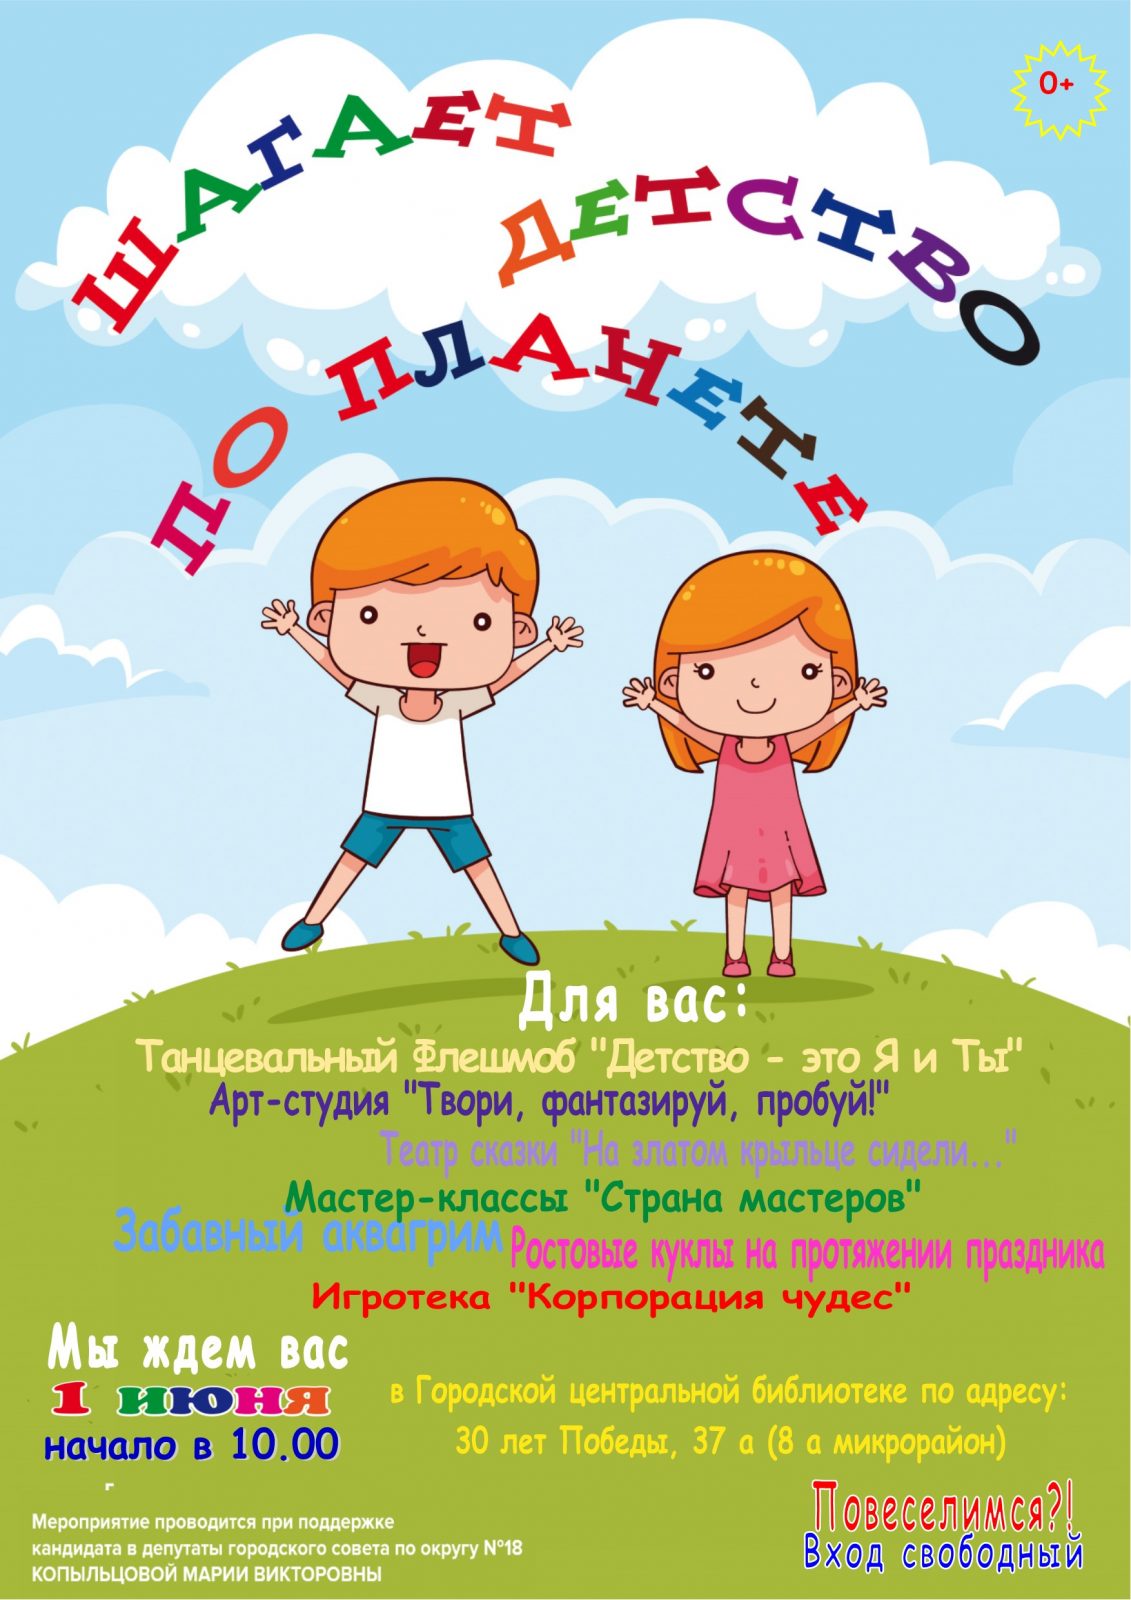 Центр 1 июня. Праздник день защиты детей. С днем защиты детей. С днем защиты детей ребенку. День защиты детей плакат.